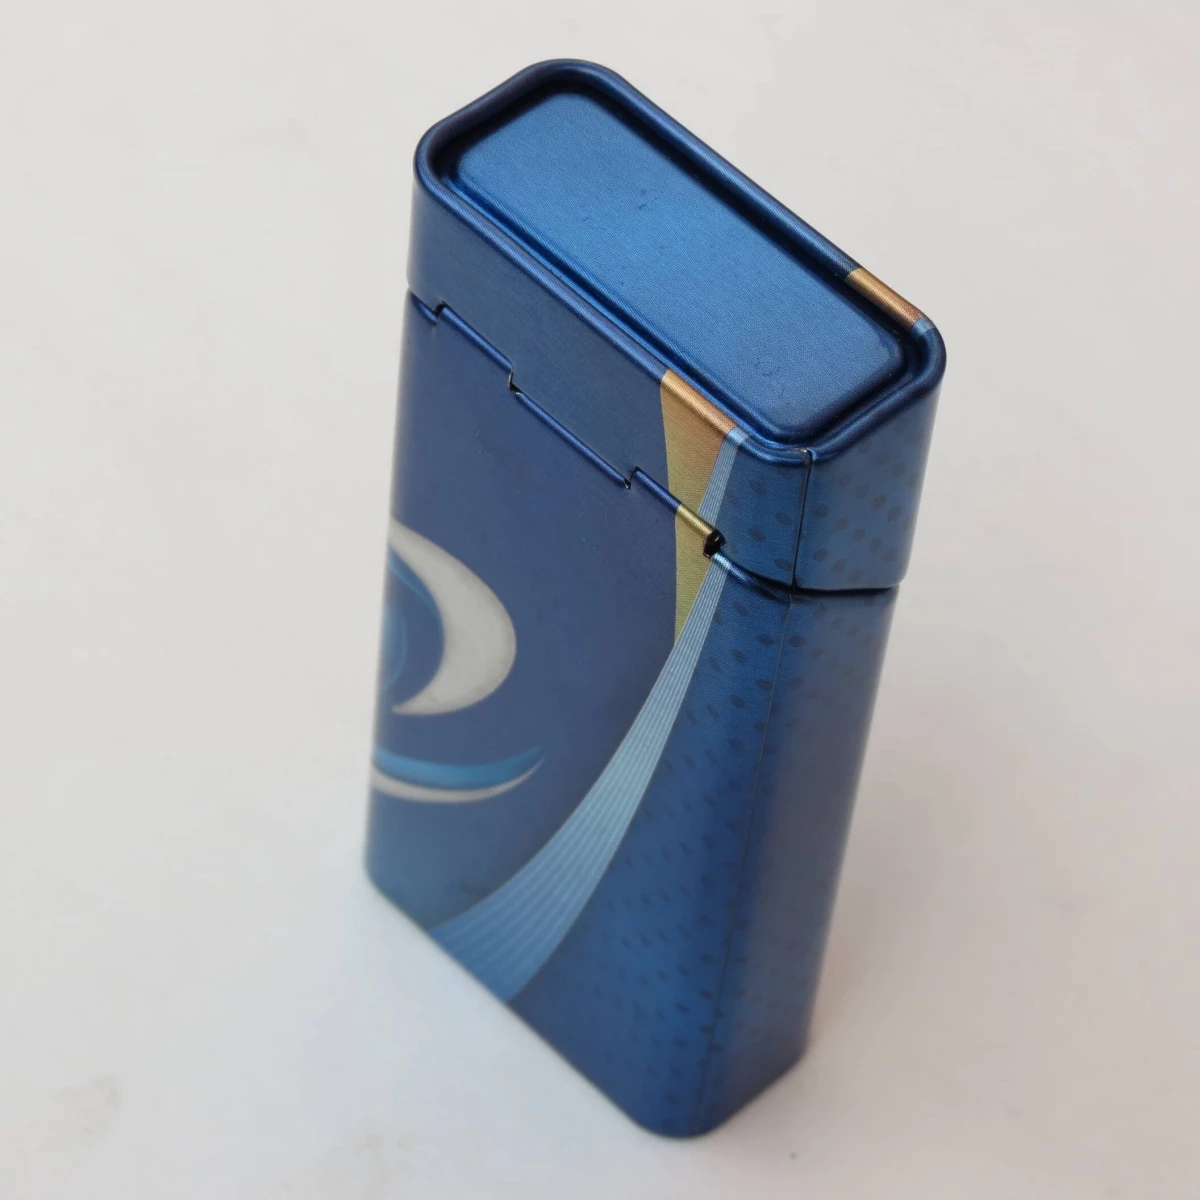 China Tinplate cigarette case Manufacturers, Factory - Buy Tinplate cigarette case at Good Price - Haohang